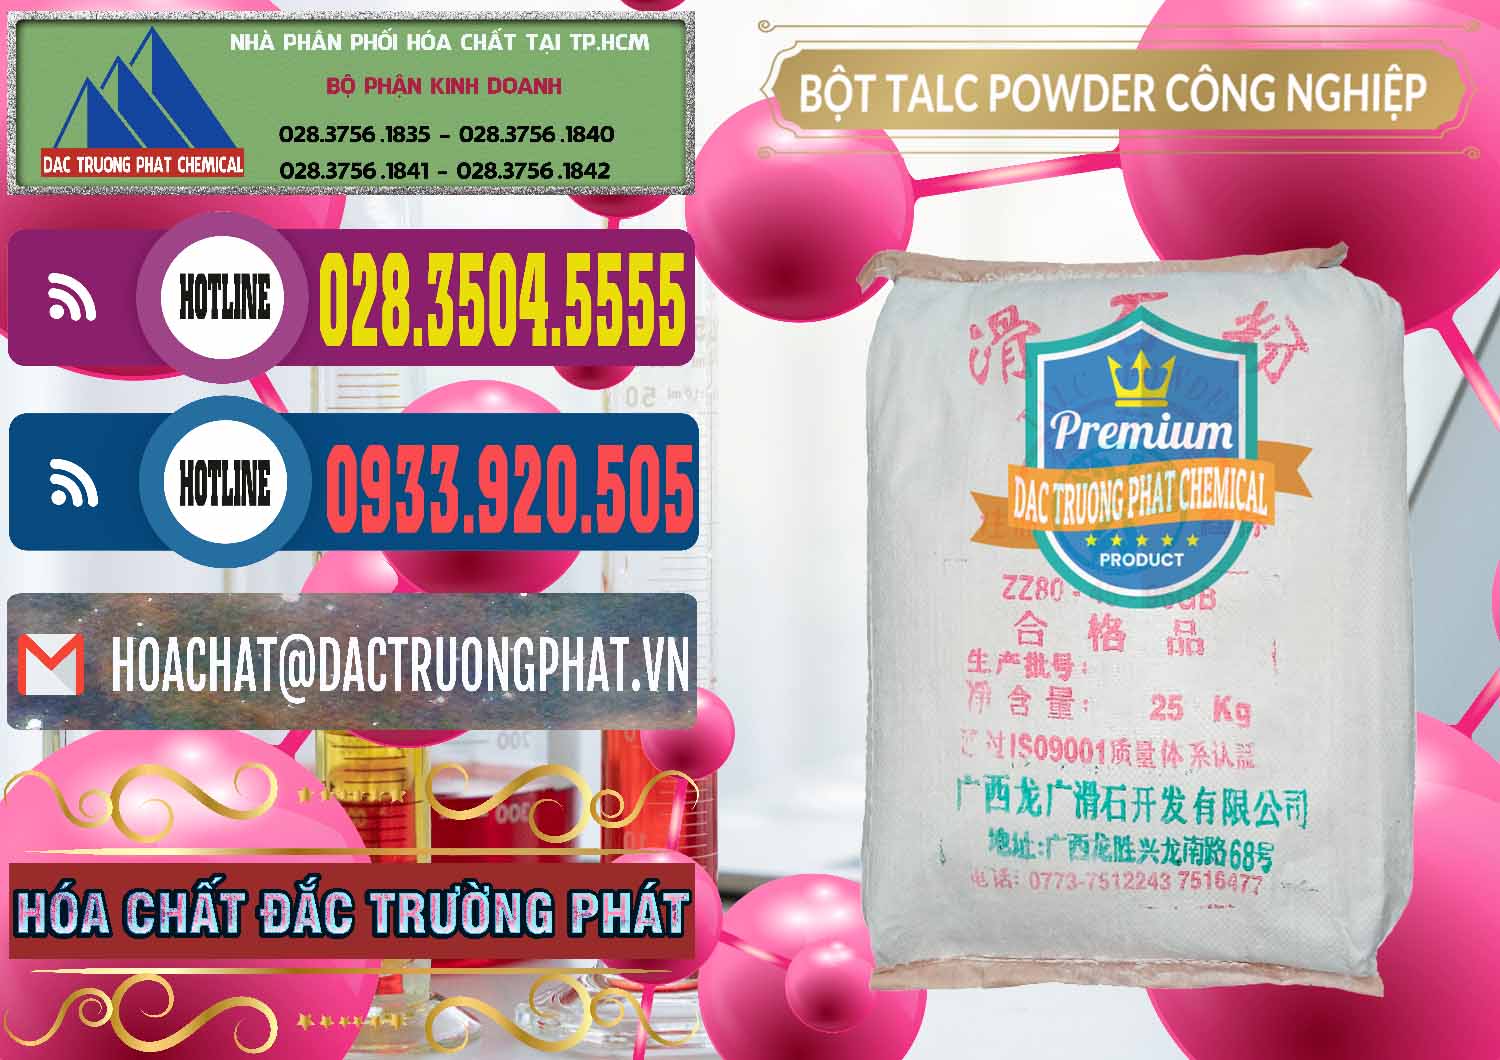 Cty cung cấp ( bán ) Bột Talc Powder Công Nghiệp Trung Quốc China - 0037 - Nhà phân phối và cung ứng hóa chất tại TP.HCM - muabanhoachat.com.vn